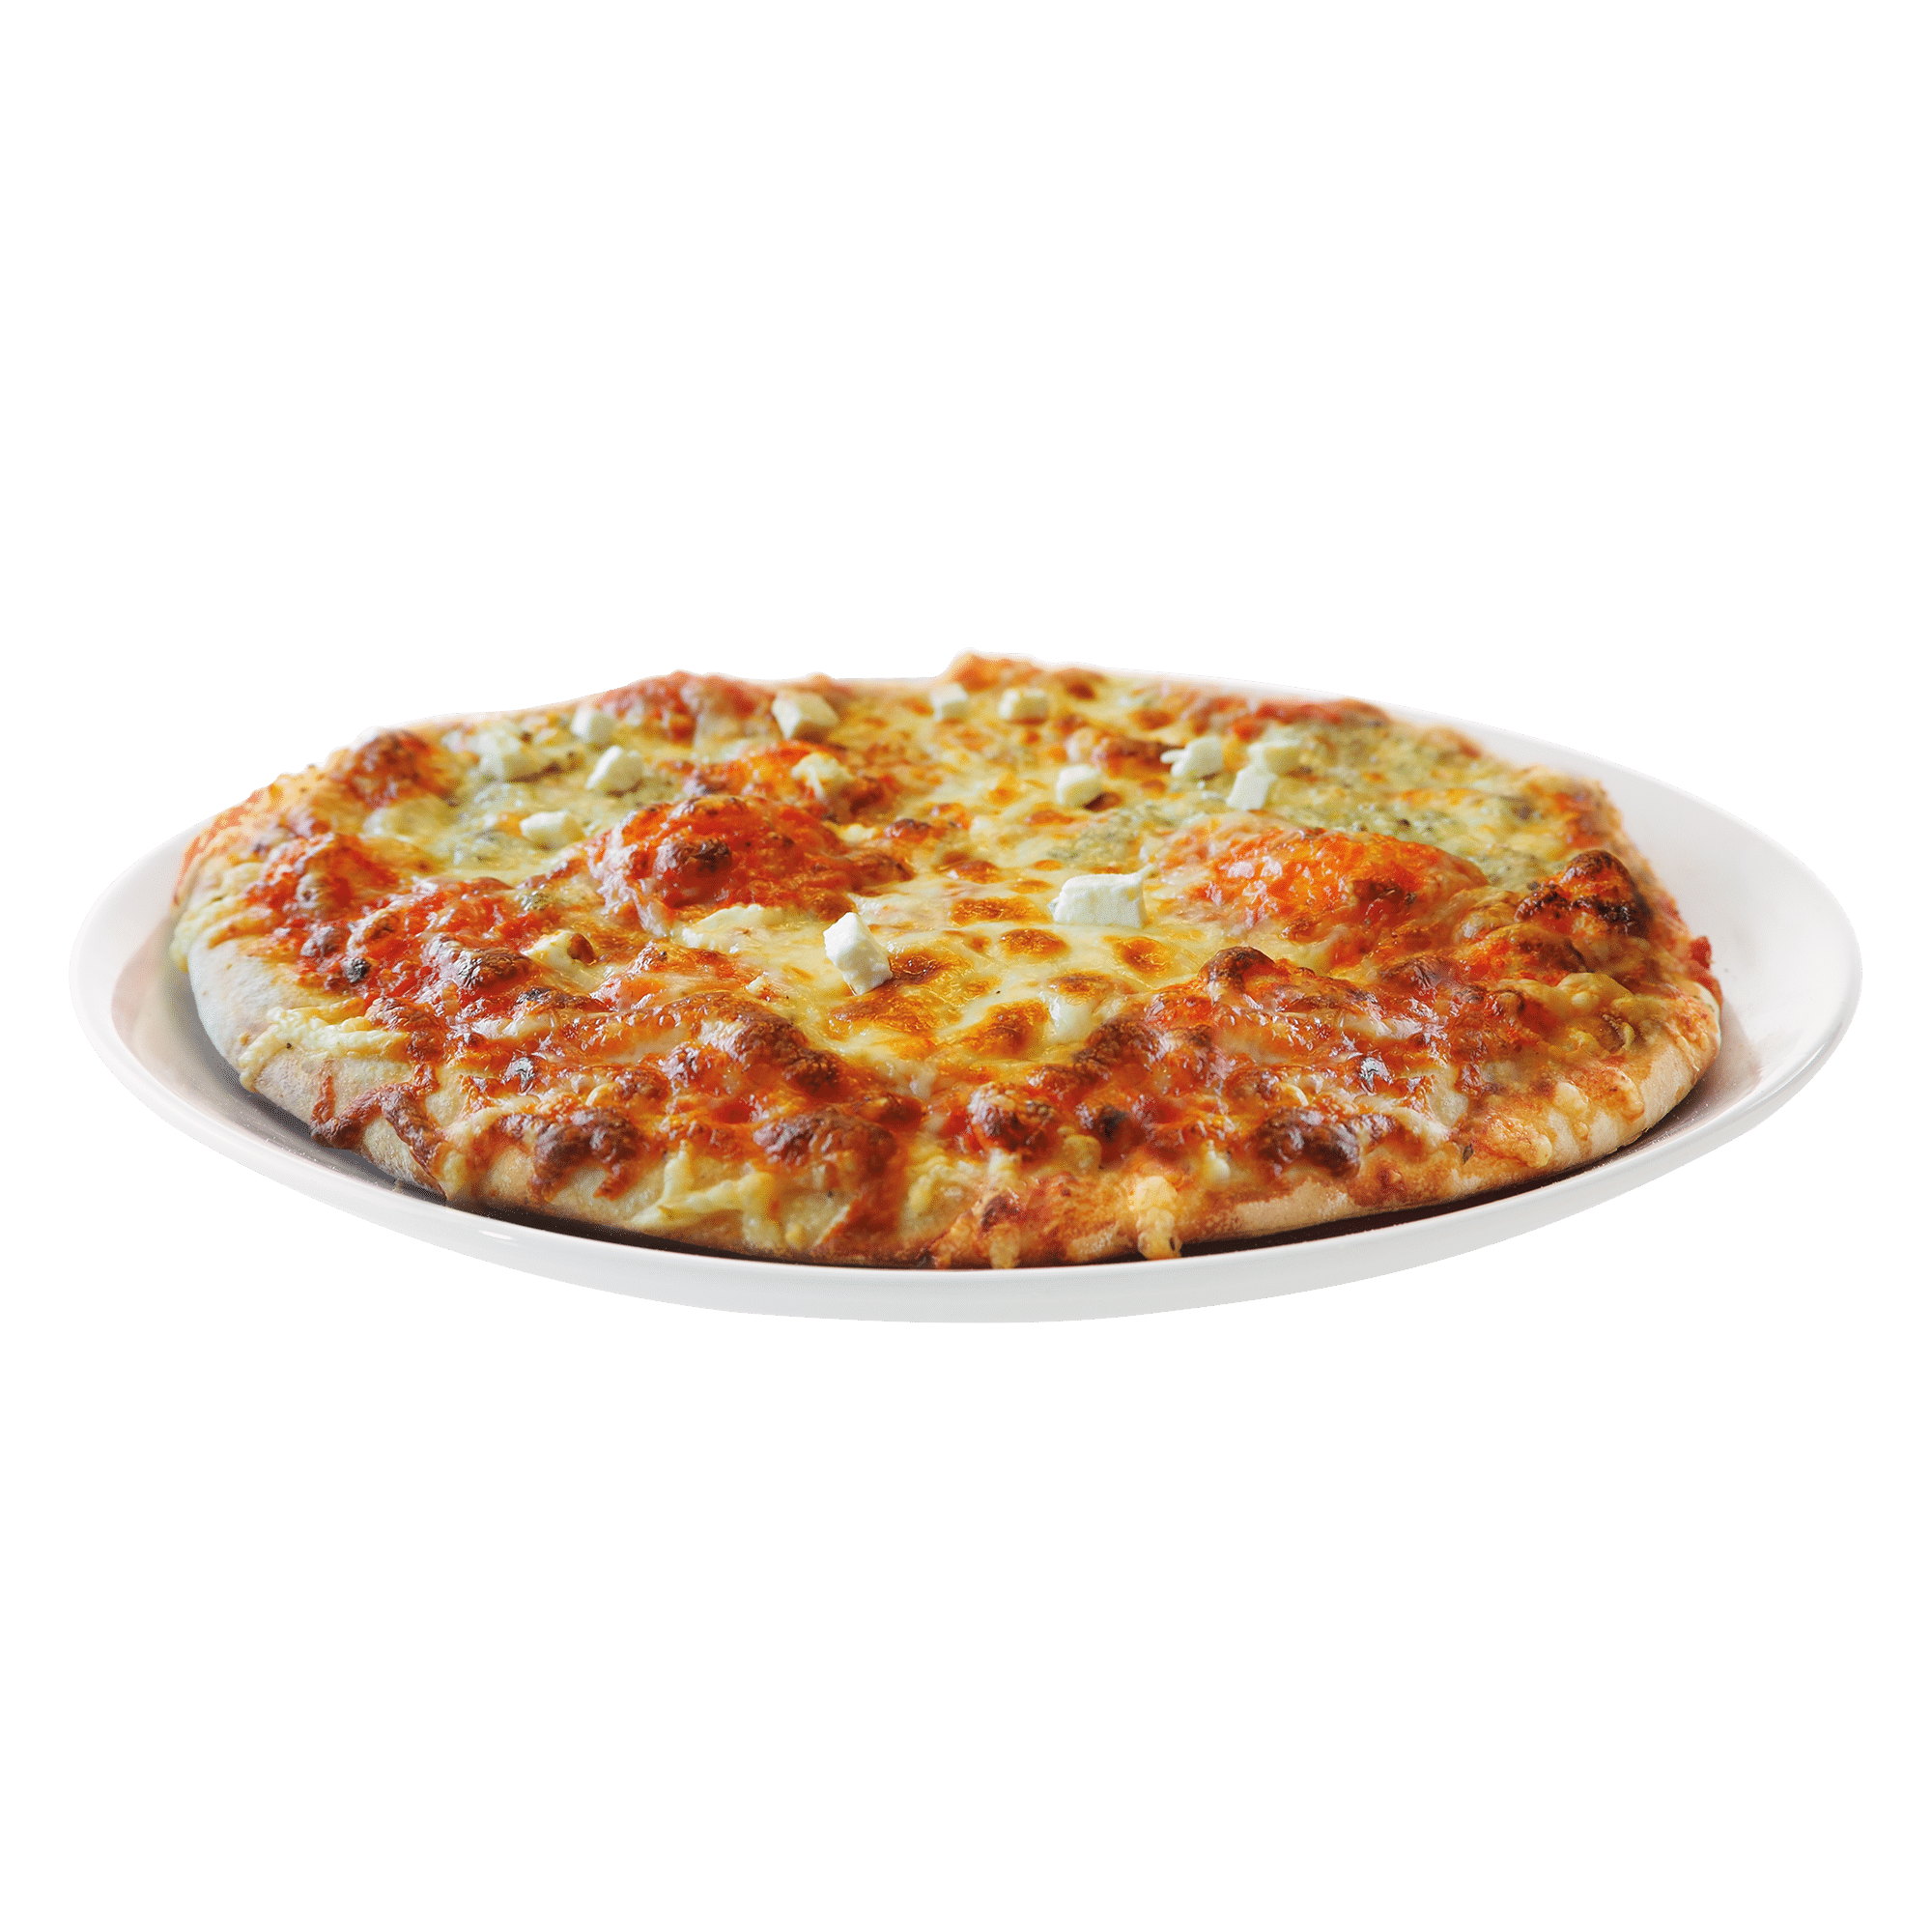 PREMIUM PIZZA “FORMAGGIO” (4-KÄSE) 480G